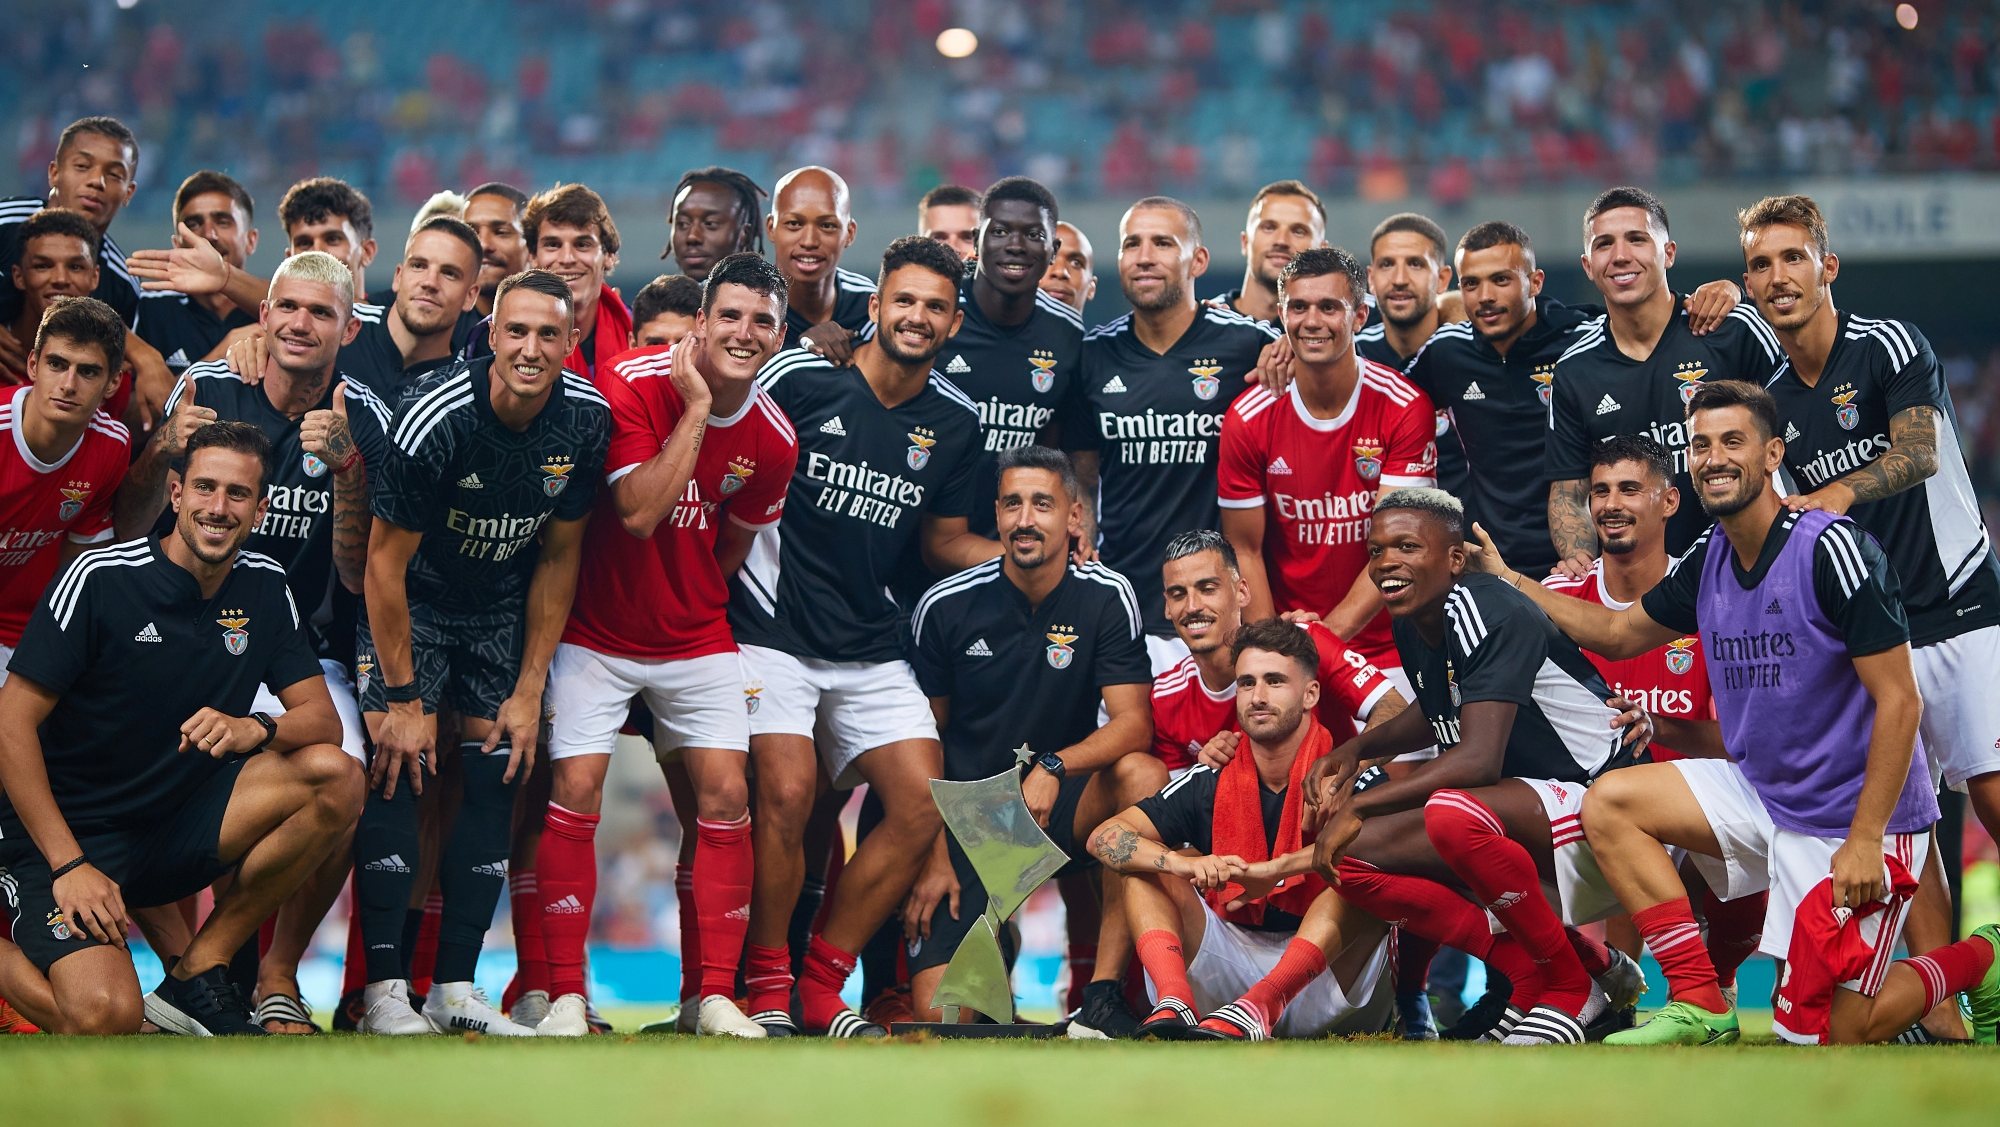 Benfica ganhou os três jogos disputados na pré-temporada até ao momento, conquistando o Troféu do Algarve após bater Nice e Fulham